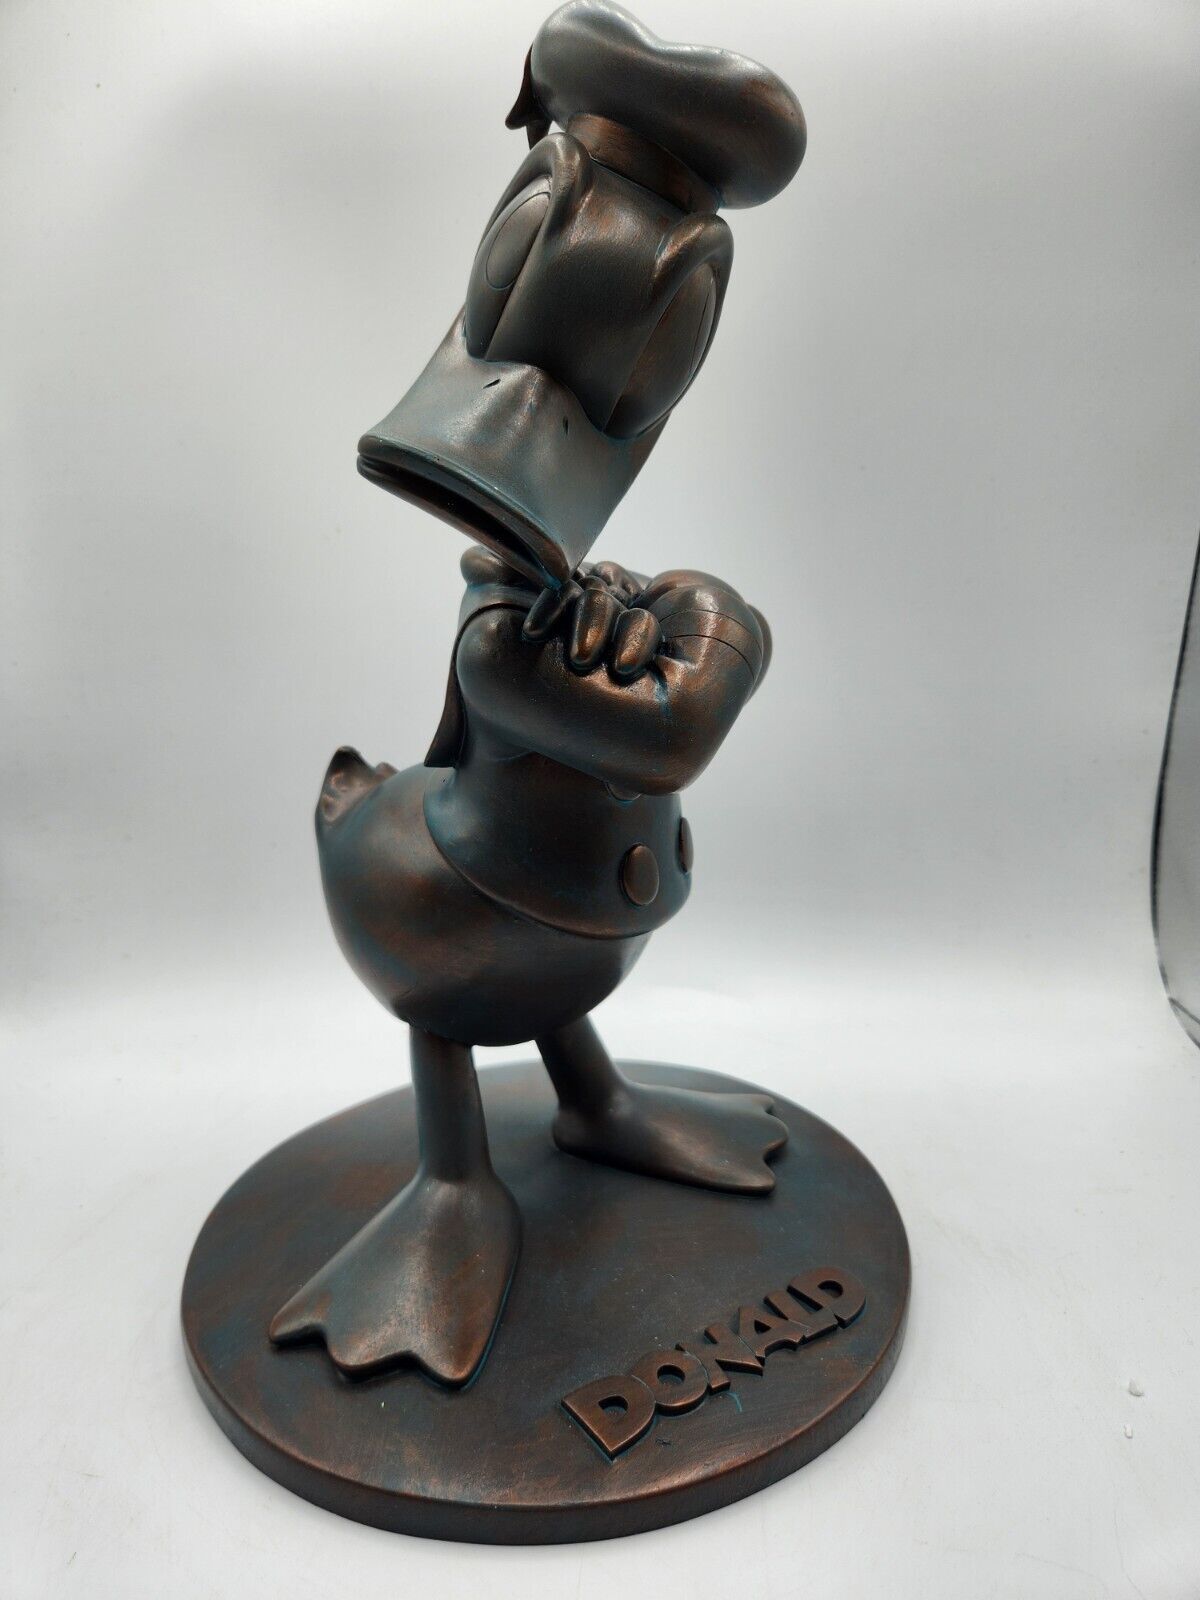 Rare Disney Parks Epcot 2012 Festival FG12 Donald Garden Resin Figurine - New - $222.26